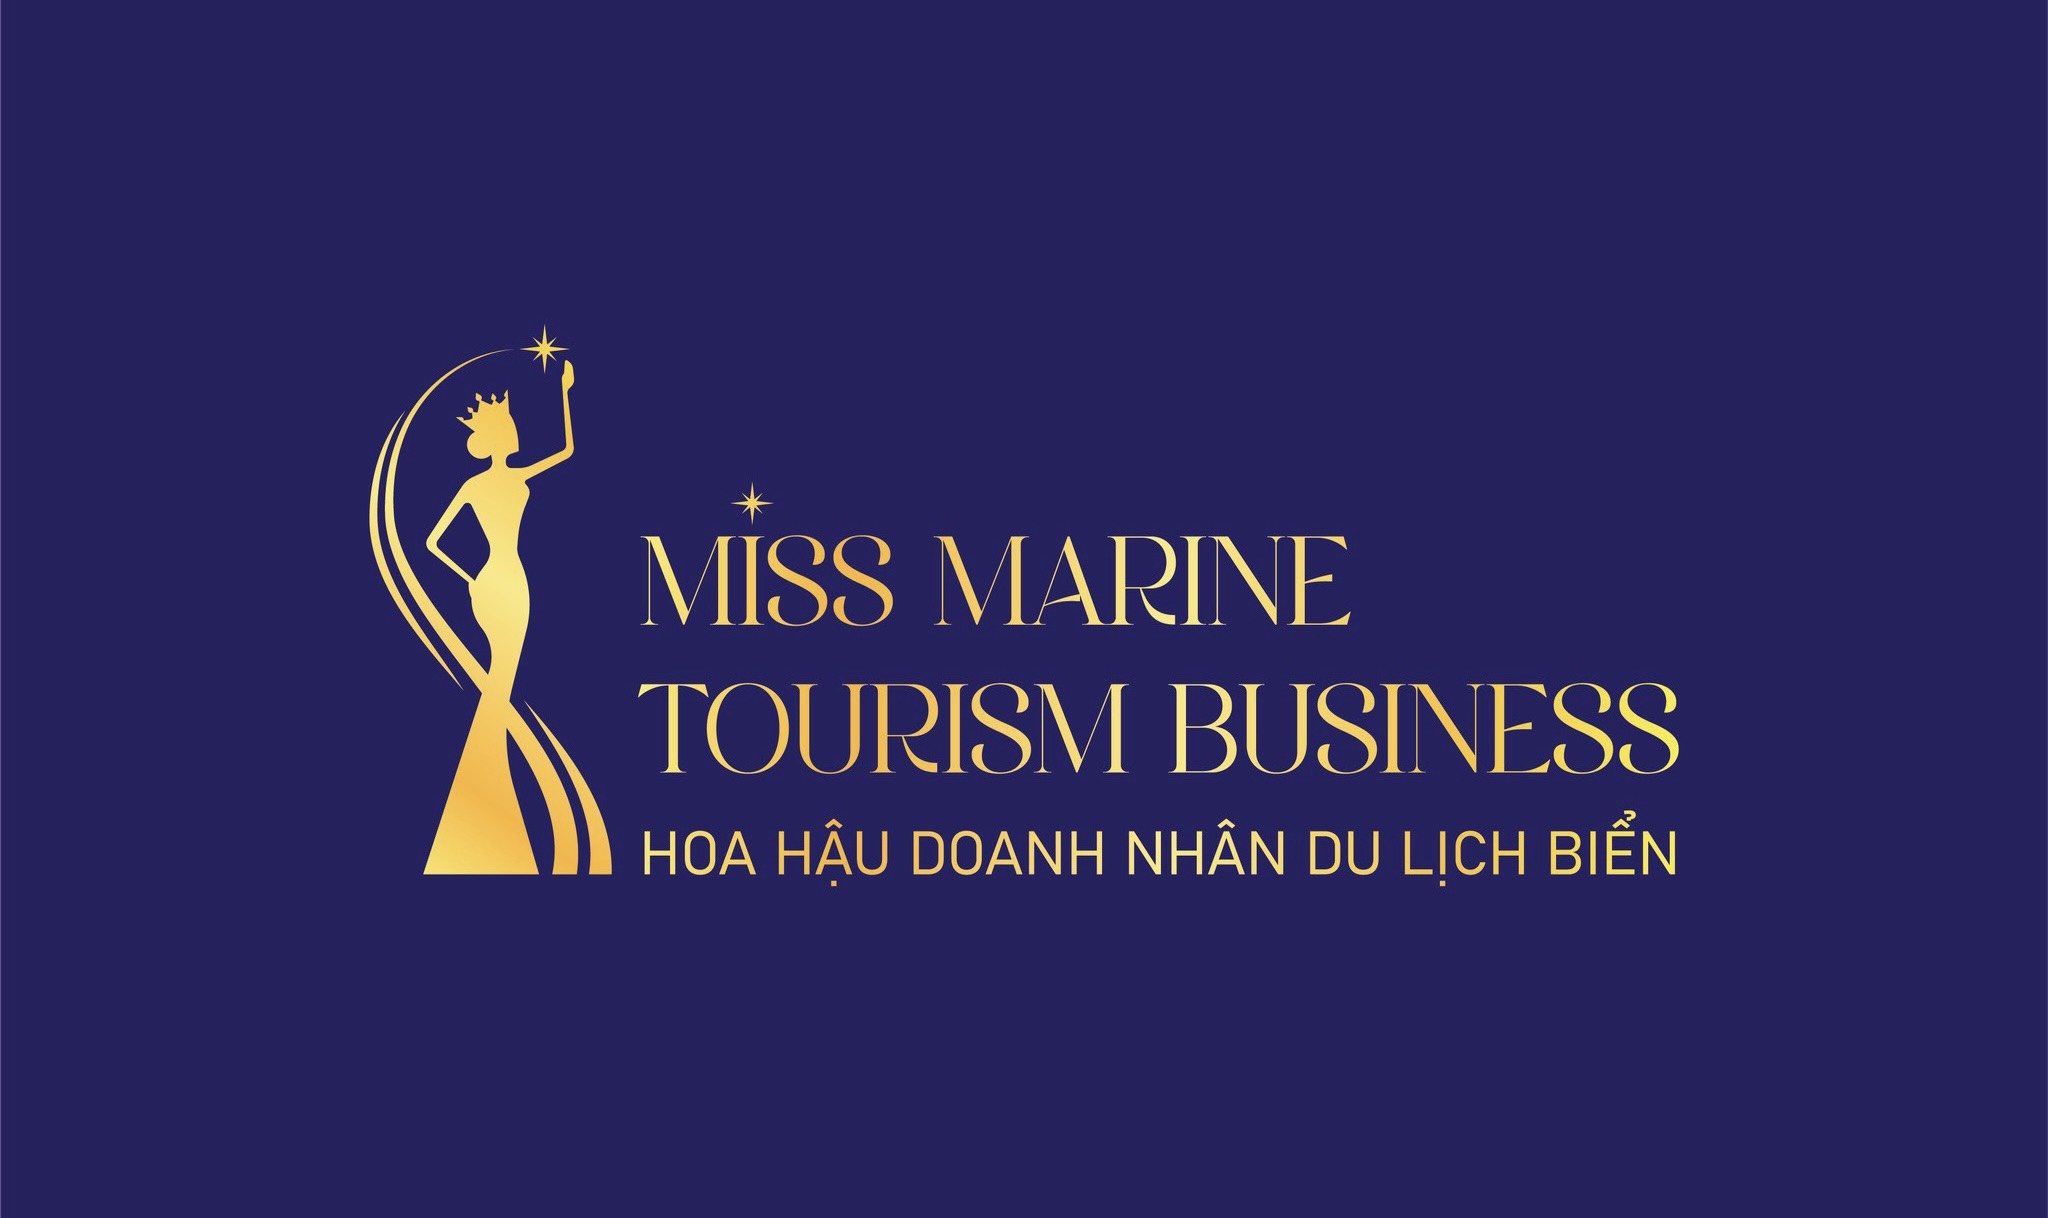 Công bố bản quyền cuộc thi Hoa hậu Doanh nhân Du lịch Biển